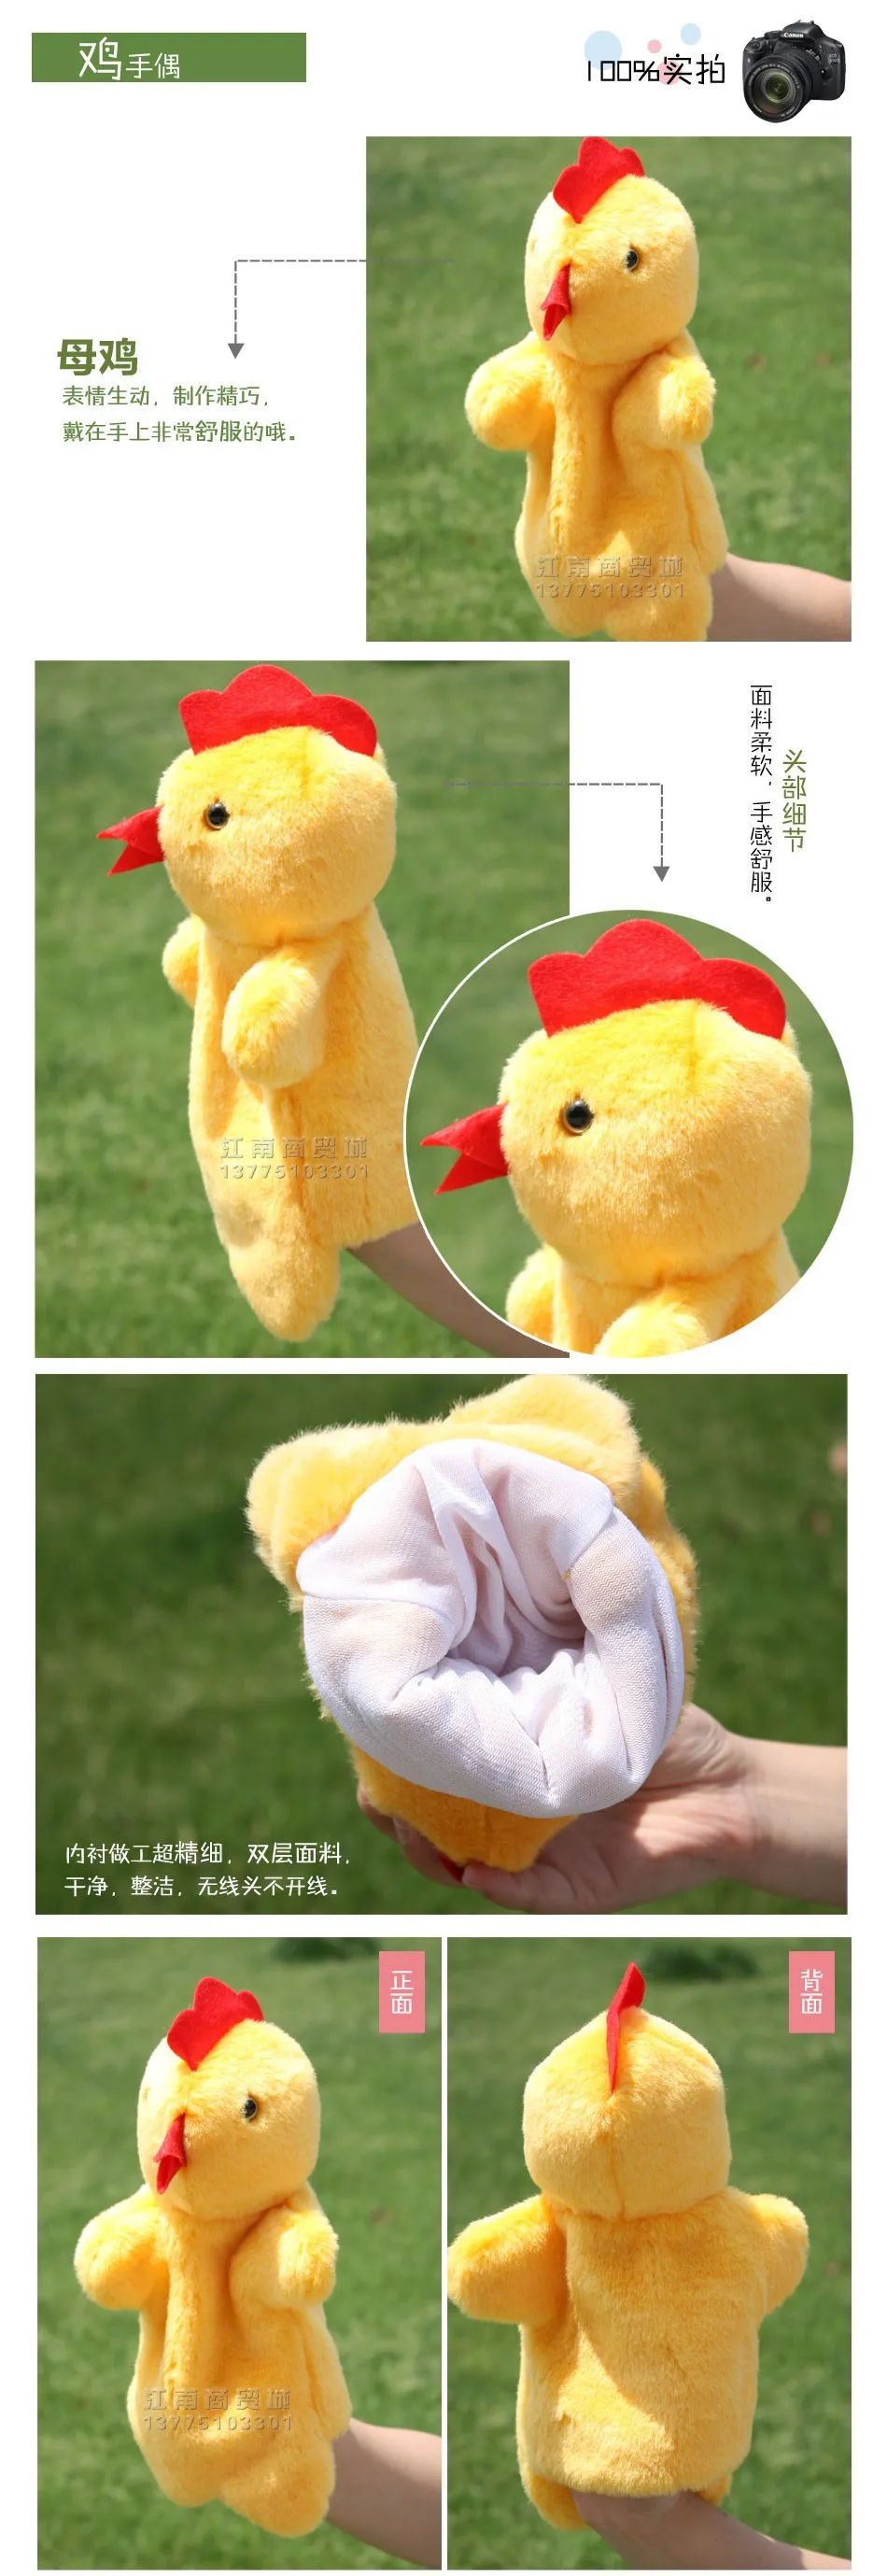 История игрушек 1 шт. 26 см маленький милый забавный желтый курицы марионетки плюшевые спальный игры одежда для малышей младенцев подарок